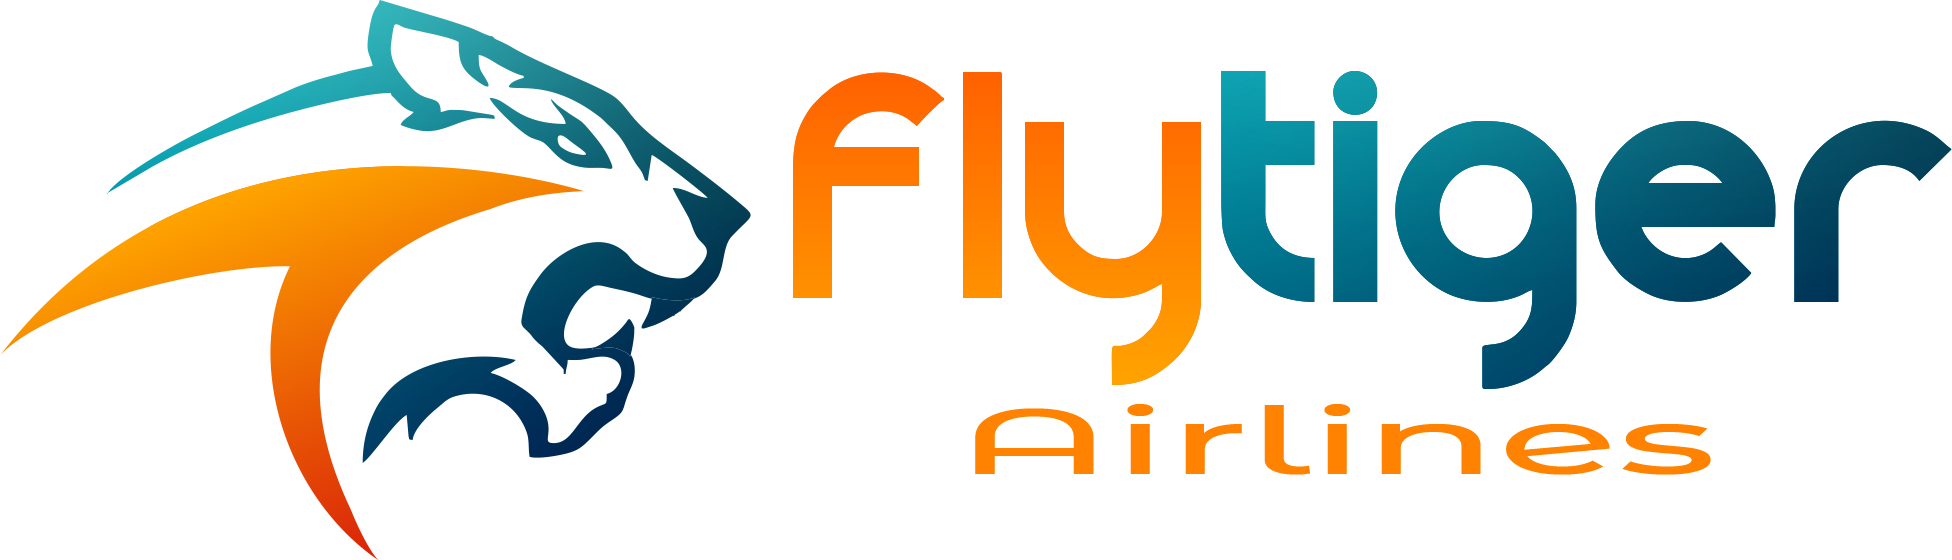 Flytiger Airlines